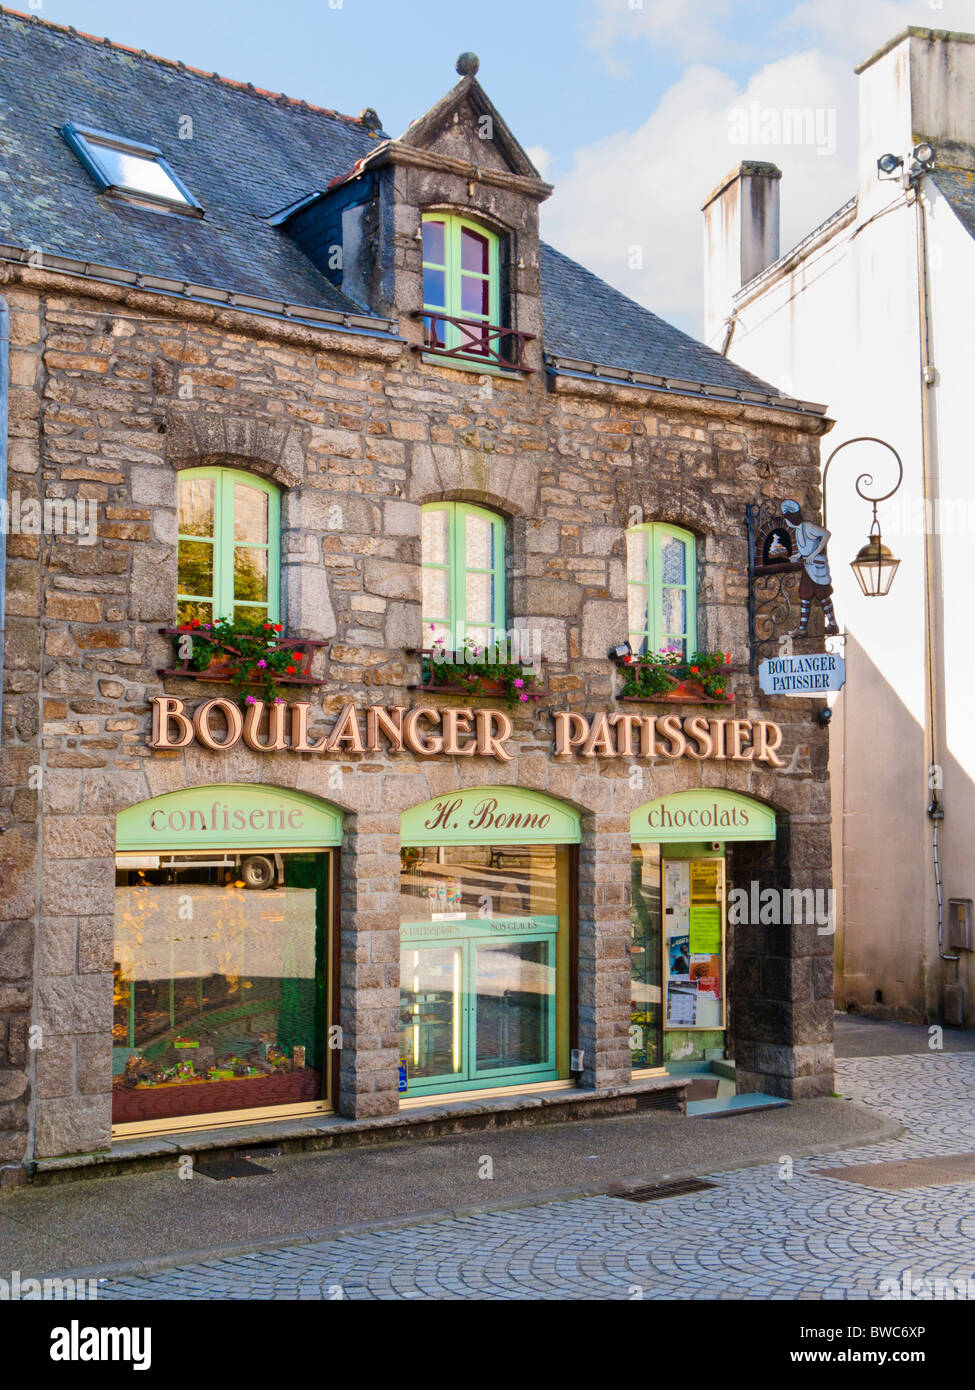 Altmodische Boulangerie Patisserie Shop in Frankreich Europa Stockfoto